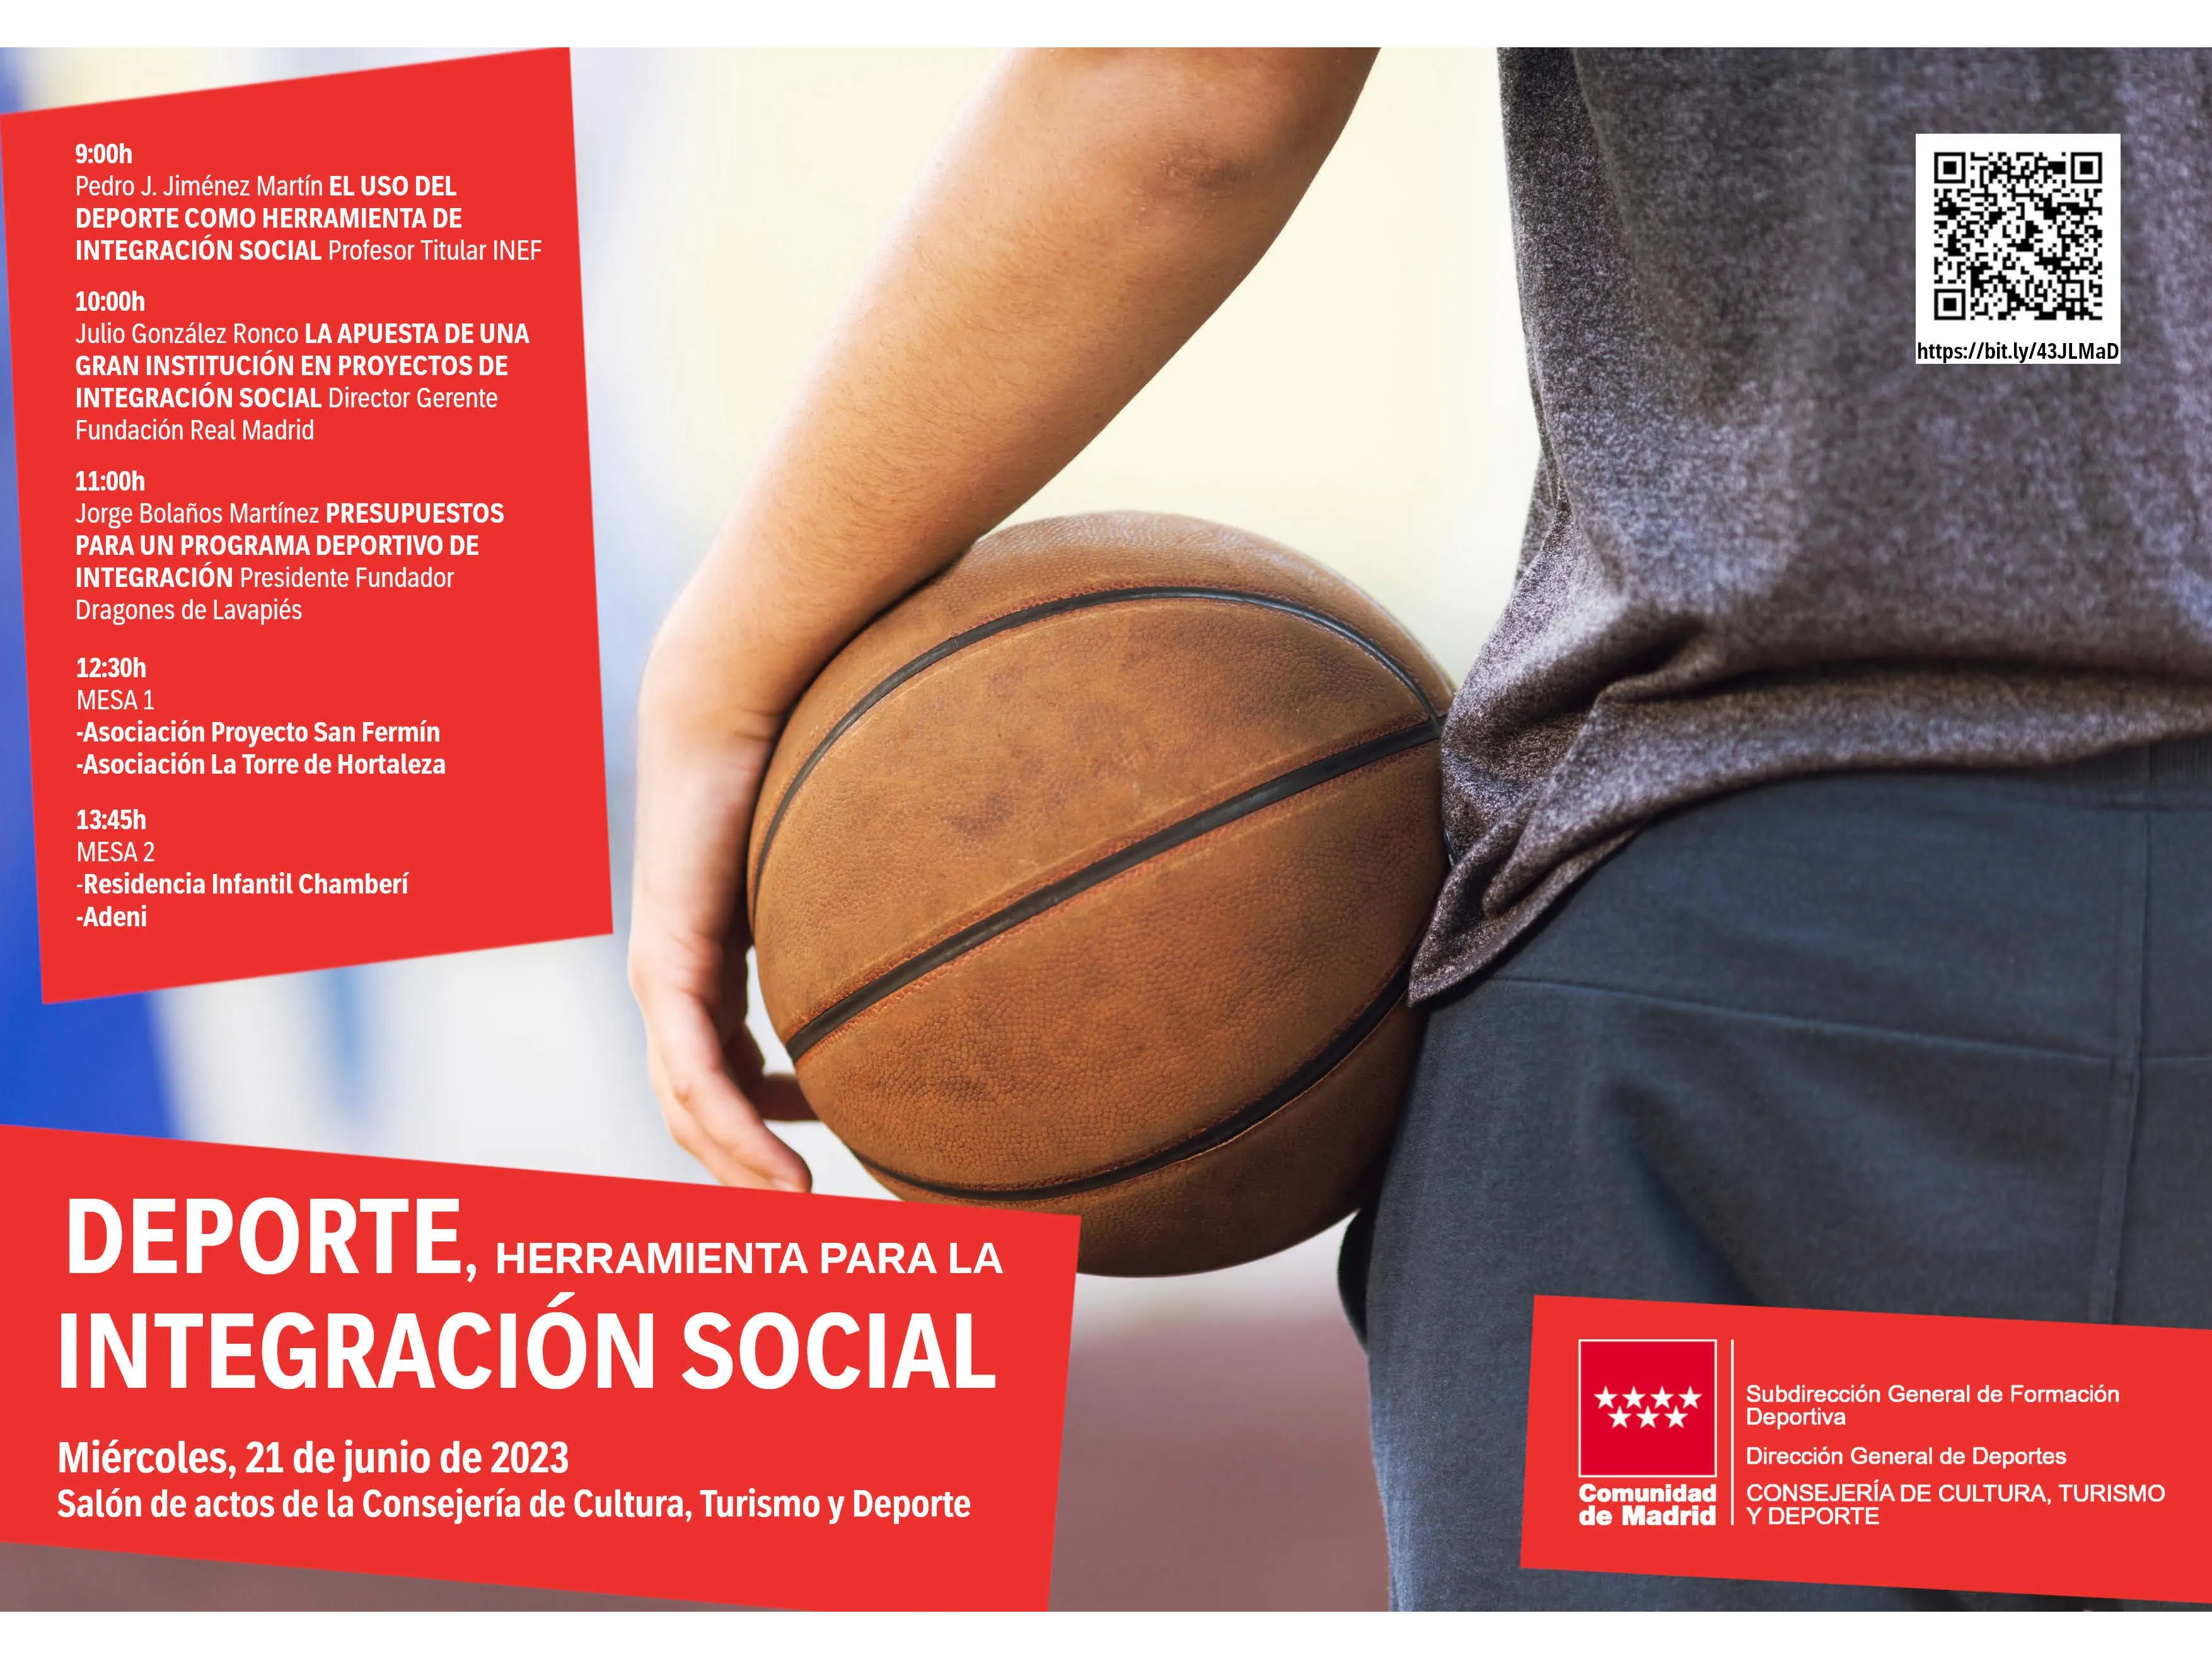 Deporte, herramienta para la integración social